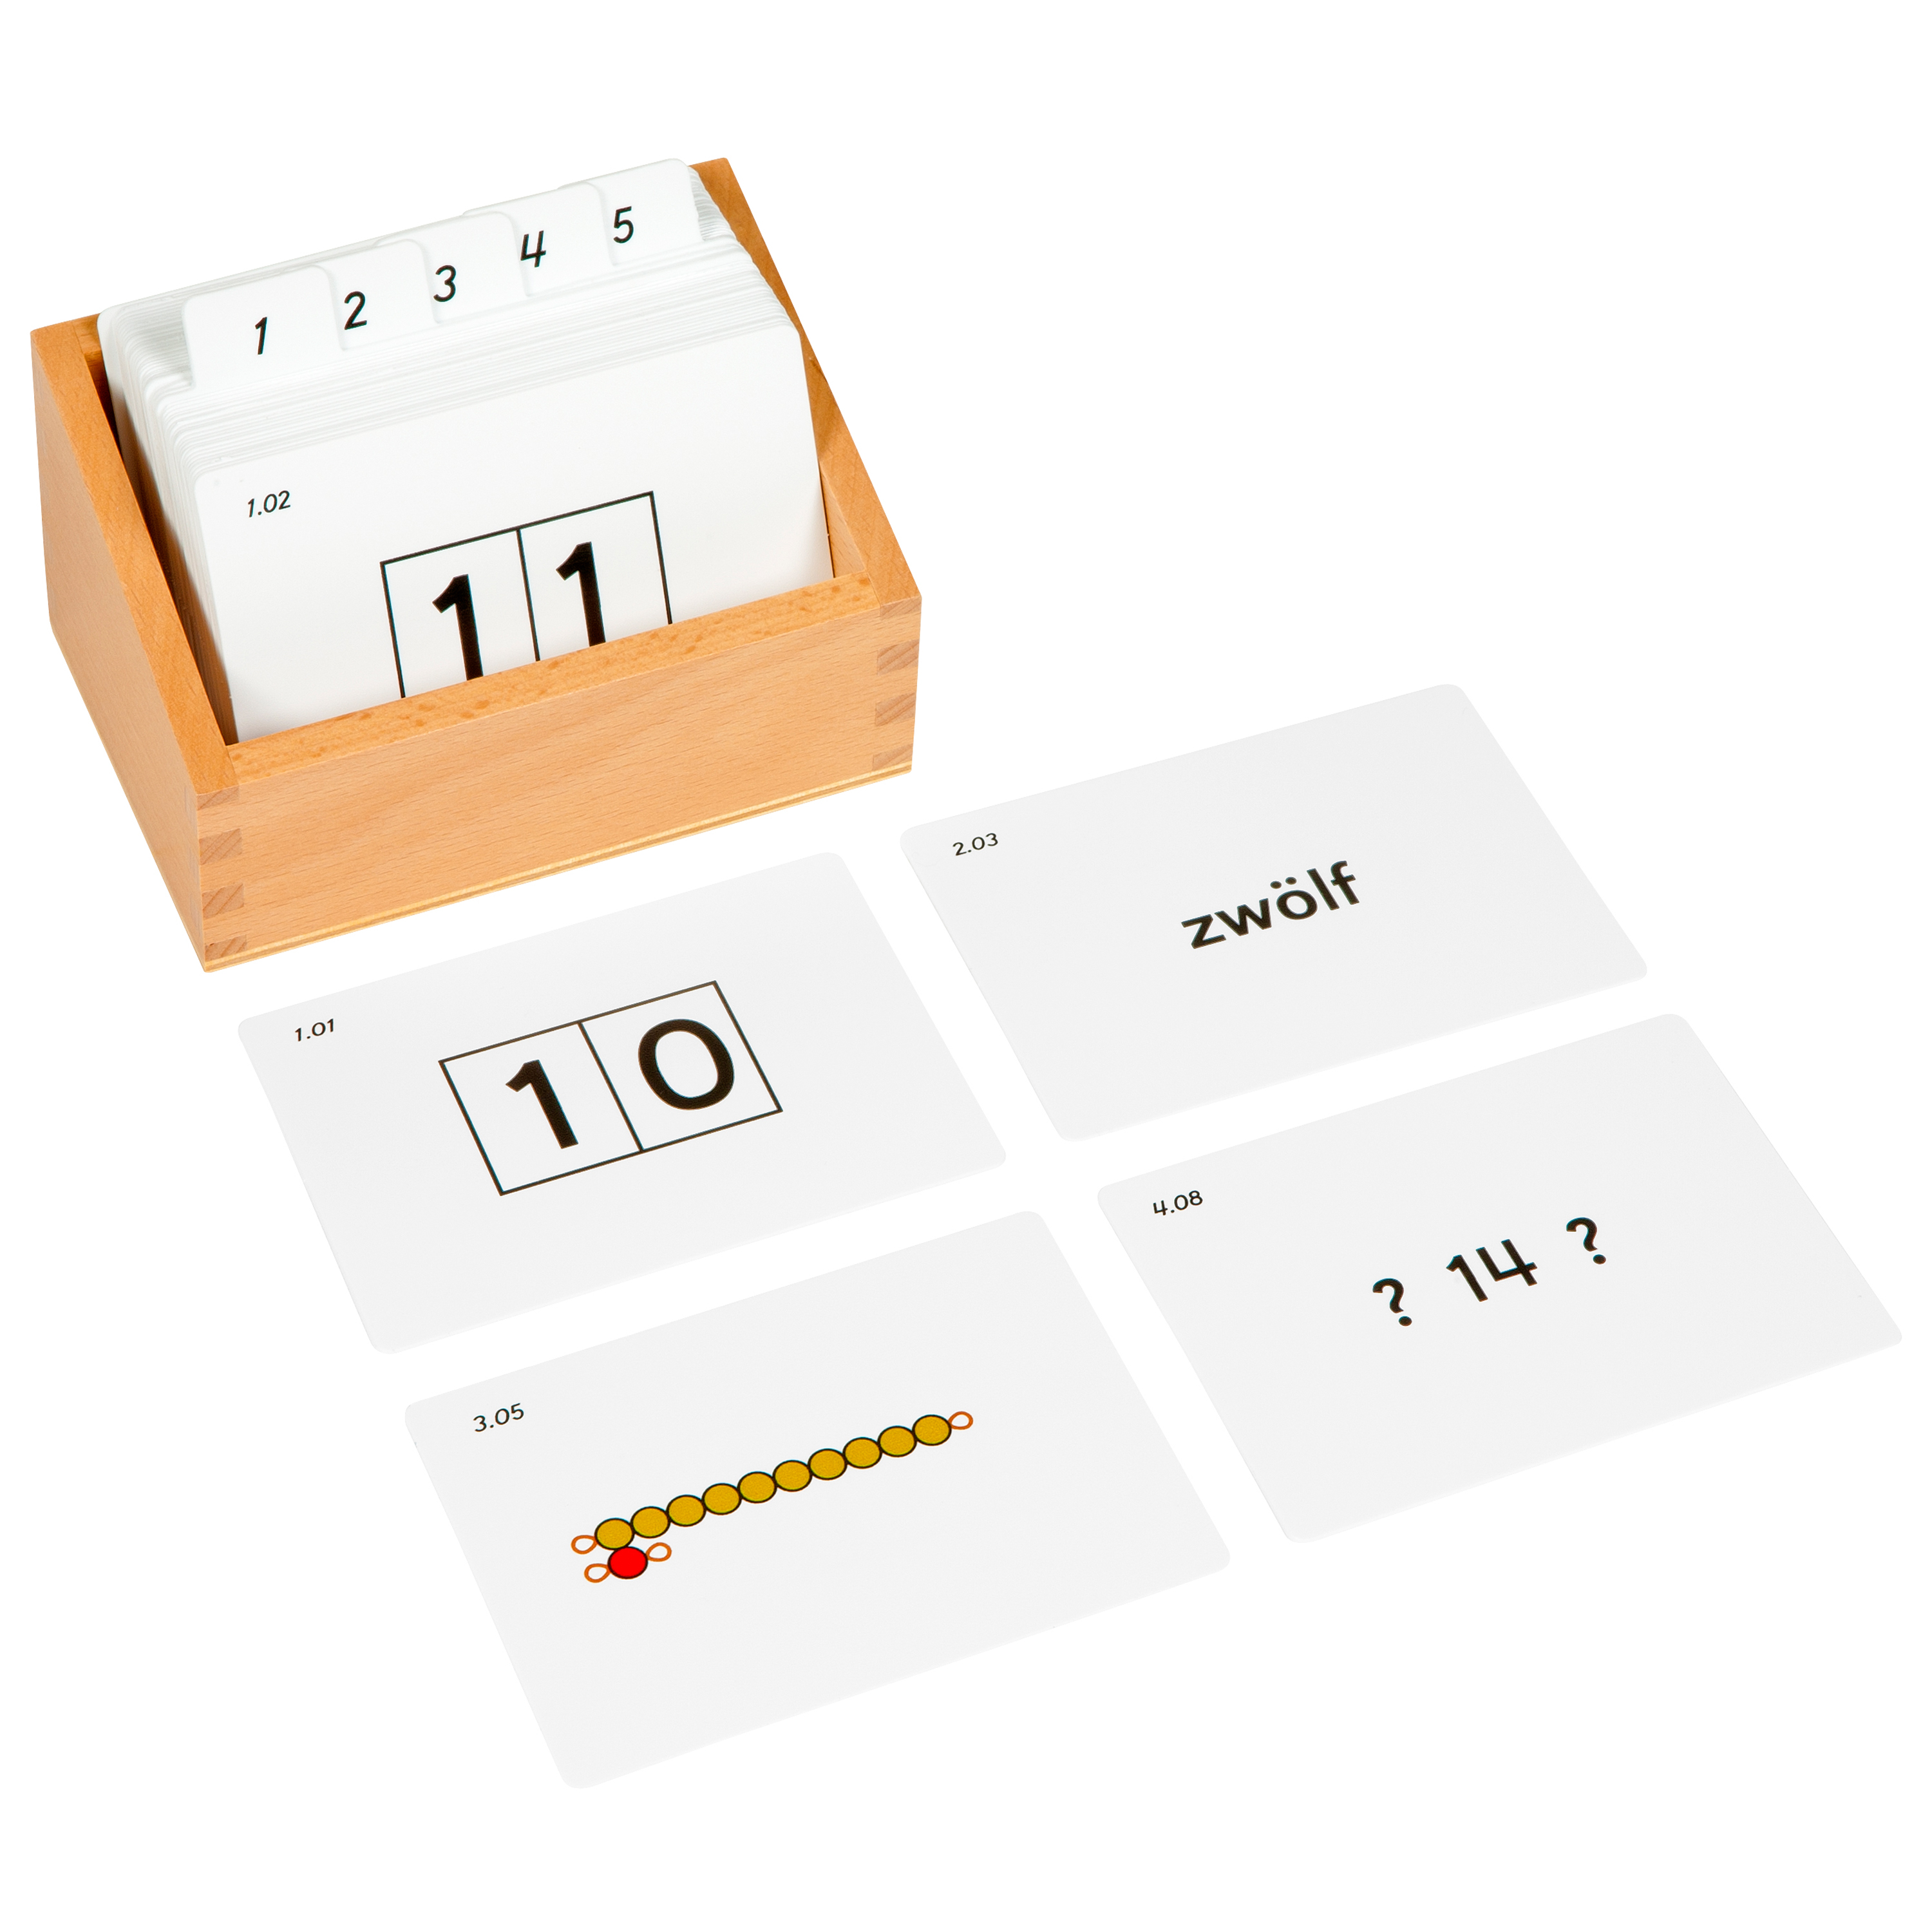 Kasten mit Aufgabenkarten für die Sequintafeln 10-99